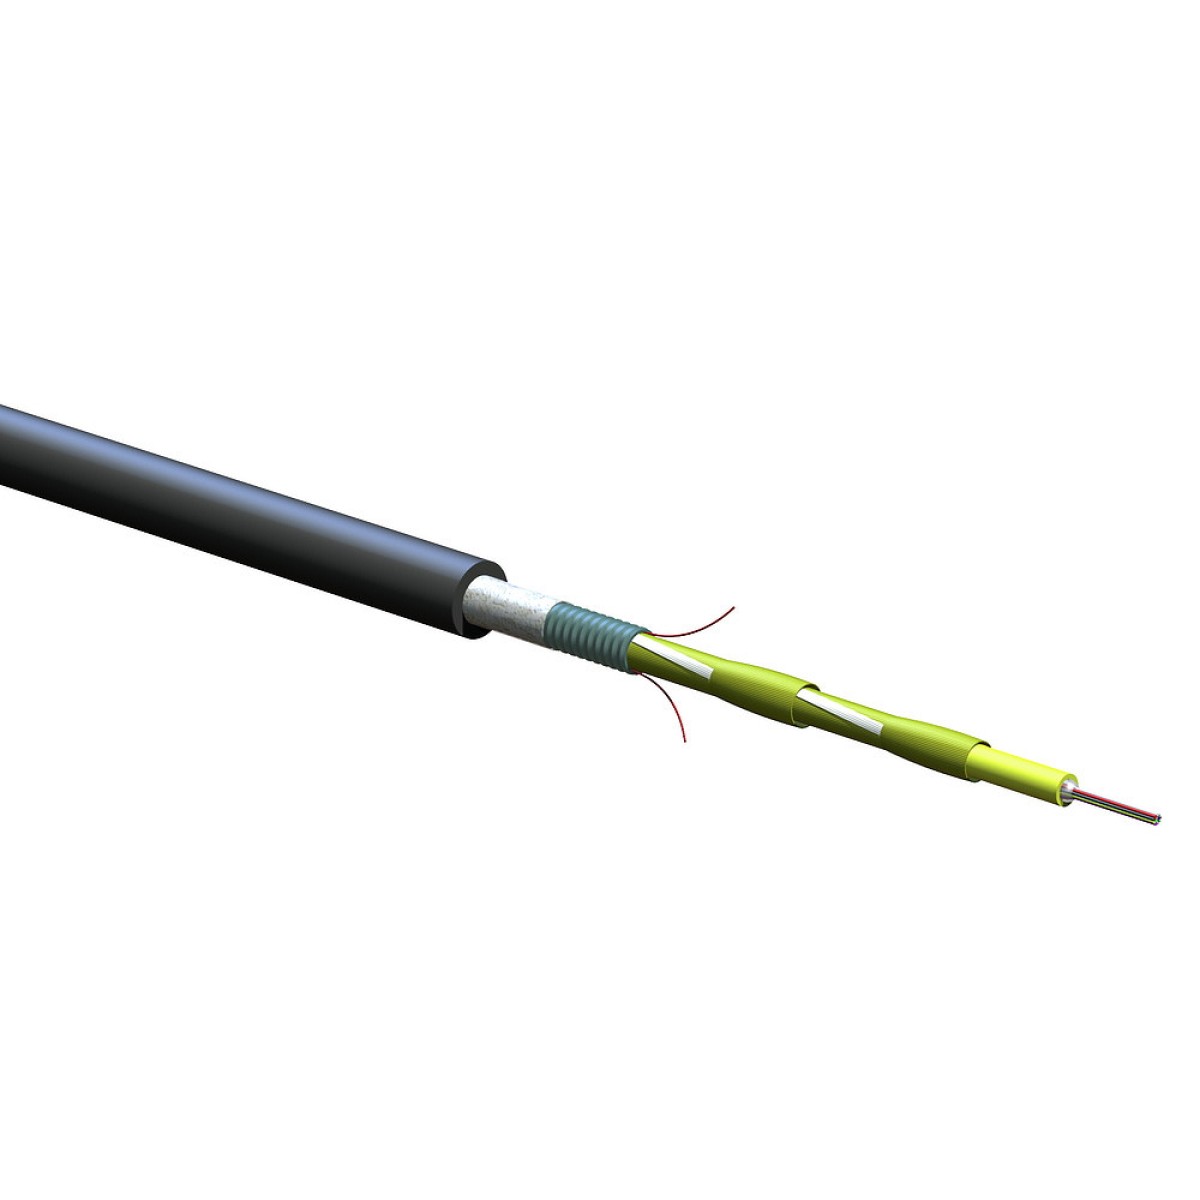 ВО кабель універсальний, U-DQ(ZN)(SR)H 8E9 SMF-28e+, гофрована броня, діелектричні підсилюючі елементи, LSZH/FRNC, Corning (008EEY-13122A2G) 256_256.jpg